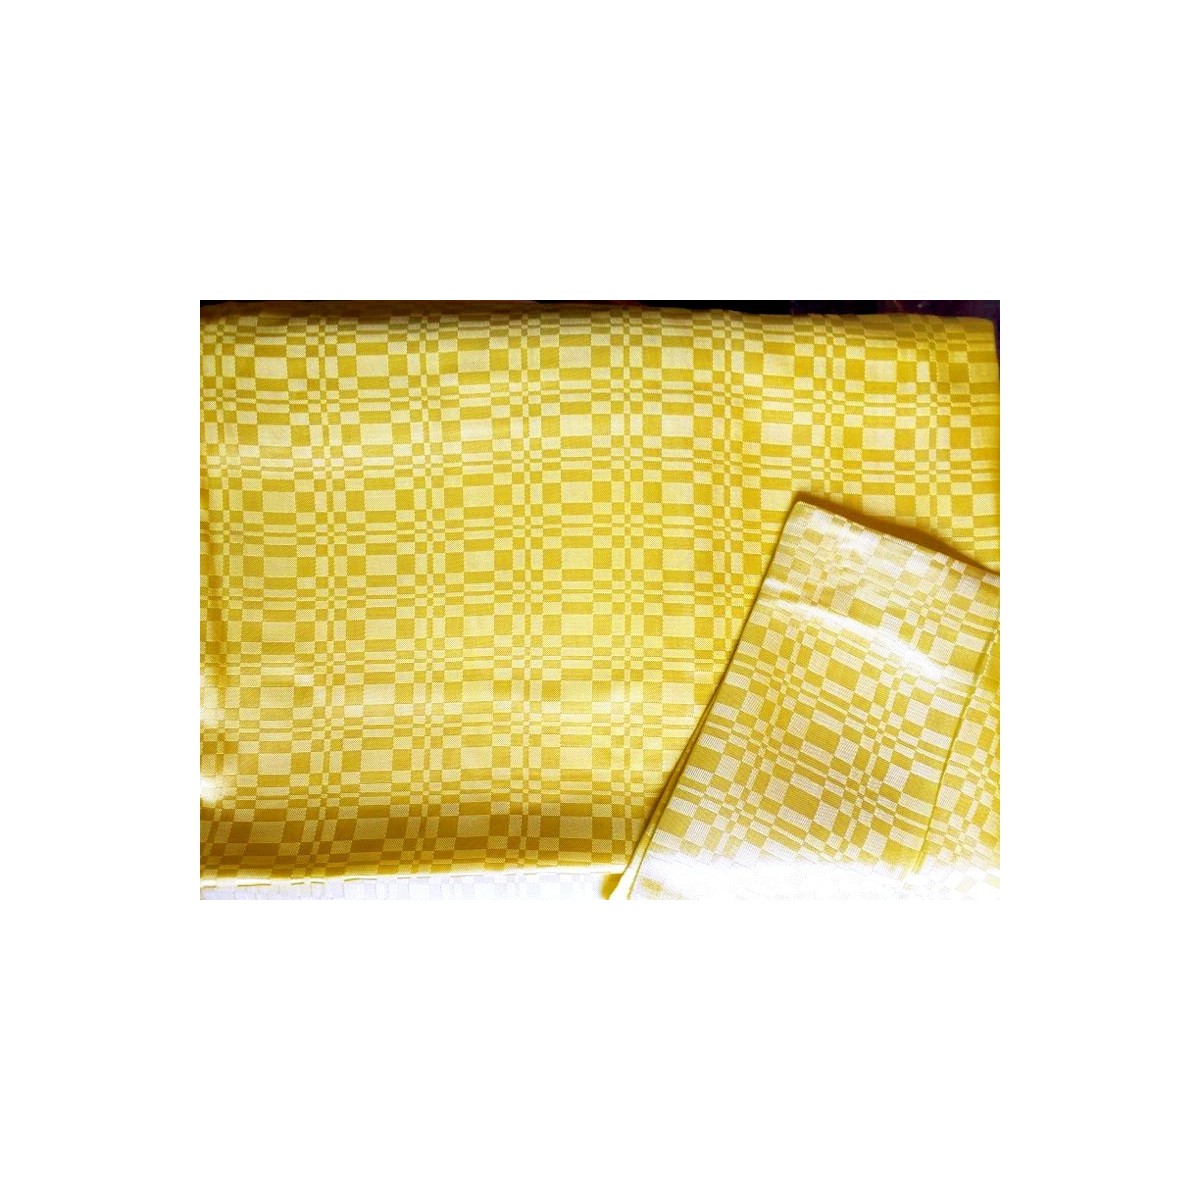  Pościel luksusowa atłasowa jedwabna żółta 160x200 polska lux 6 części